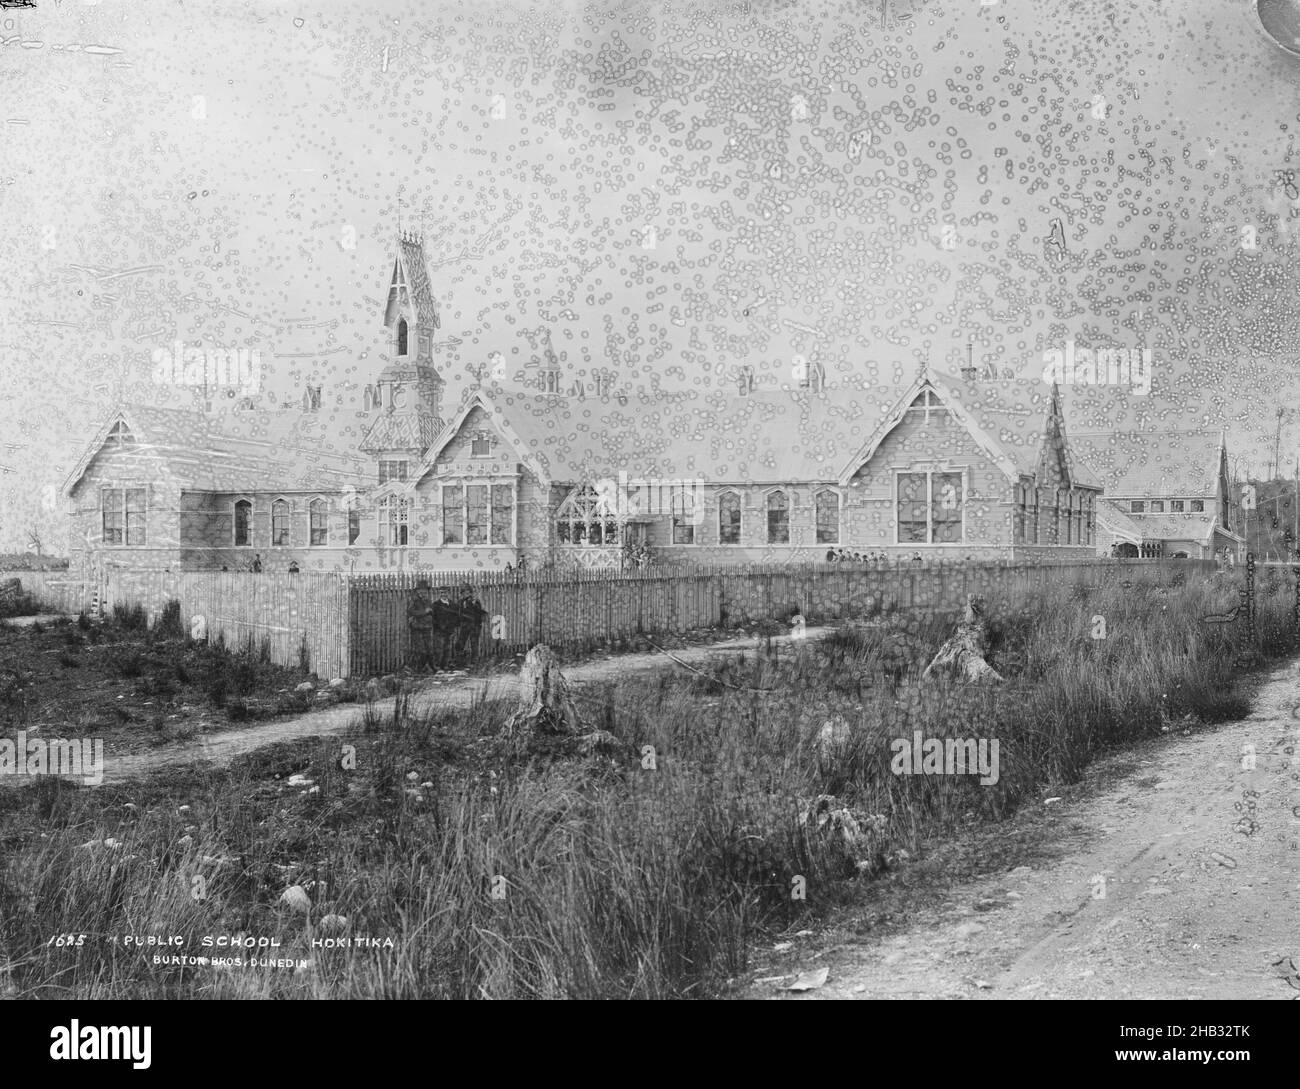 École publique, Hokitika, studio Burton Brothers, studio de photographie, vers 1880,Dunedin, photographie en noir et blanc, (deuxième série Banque D'Images